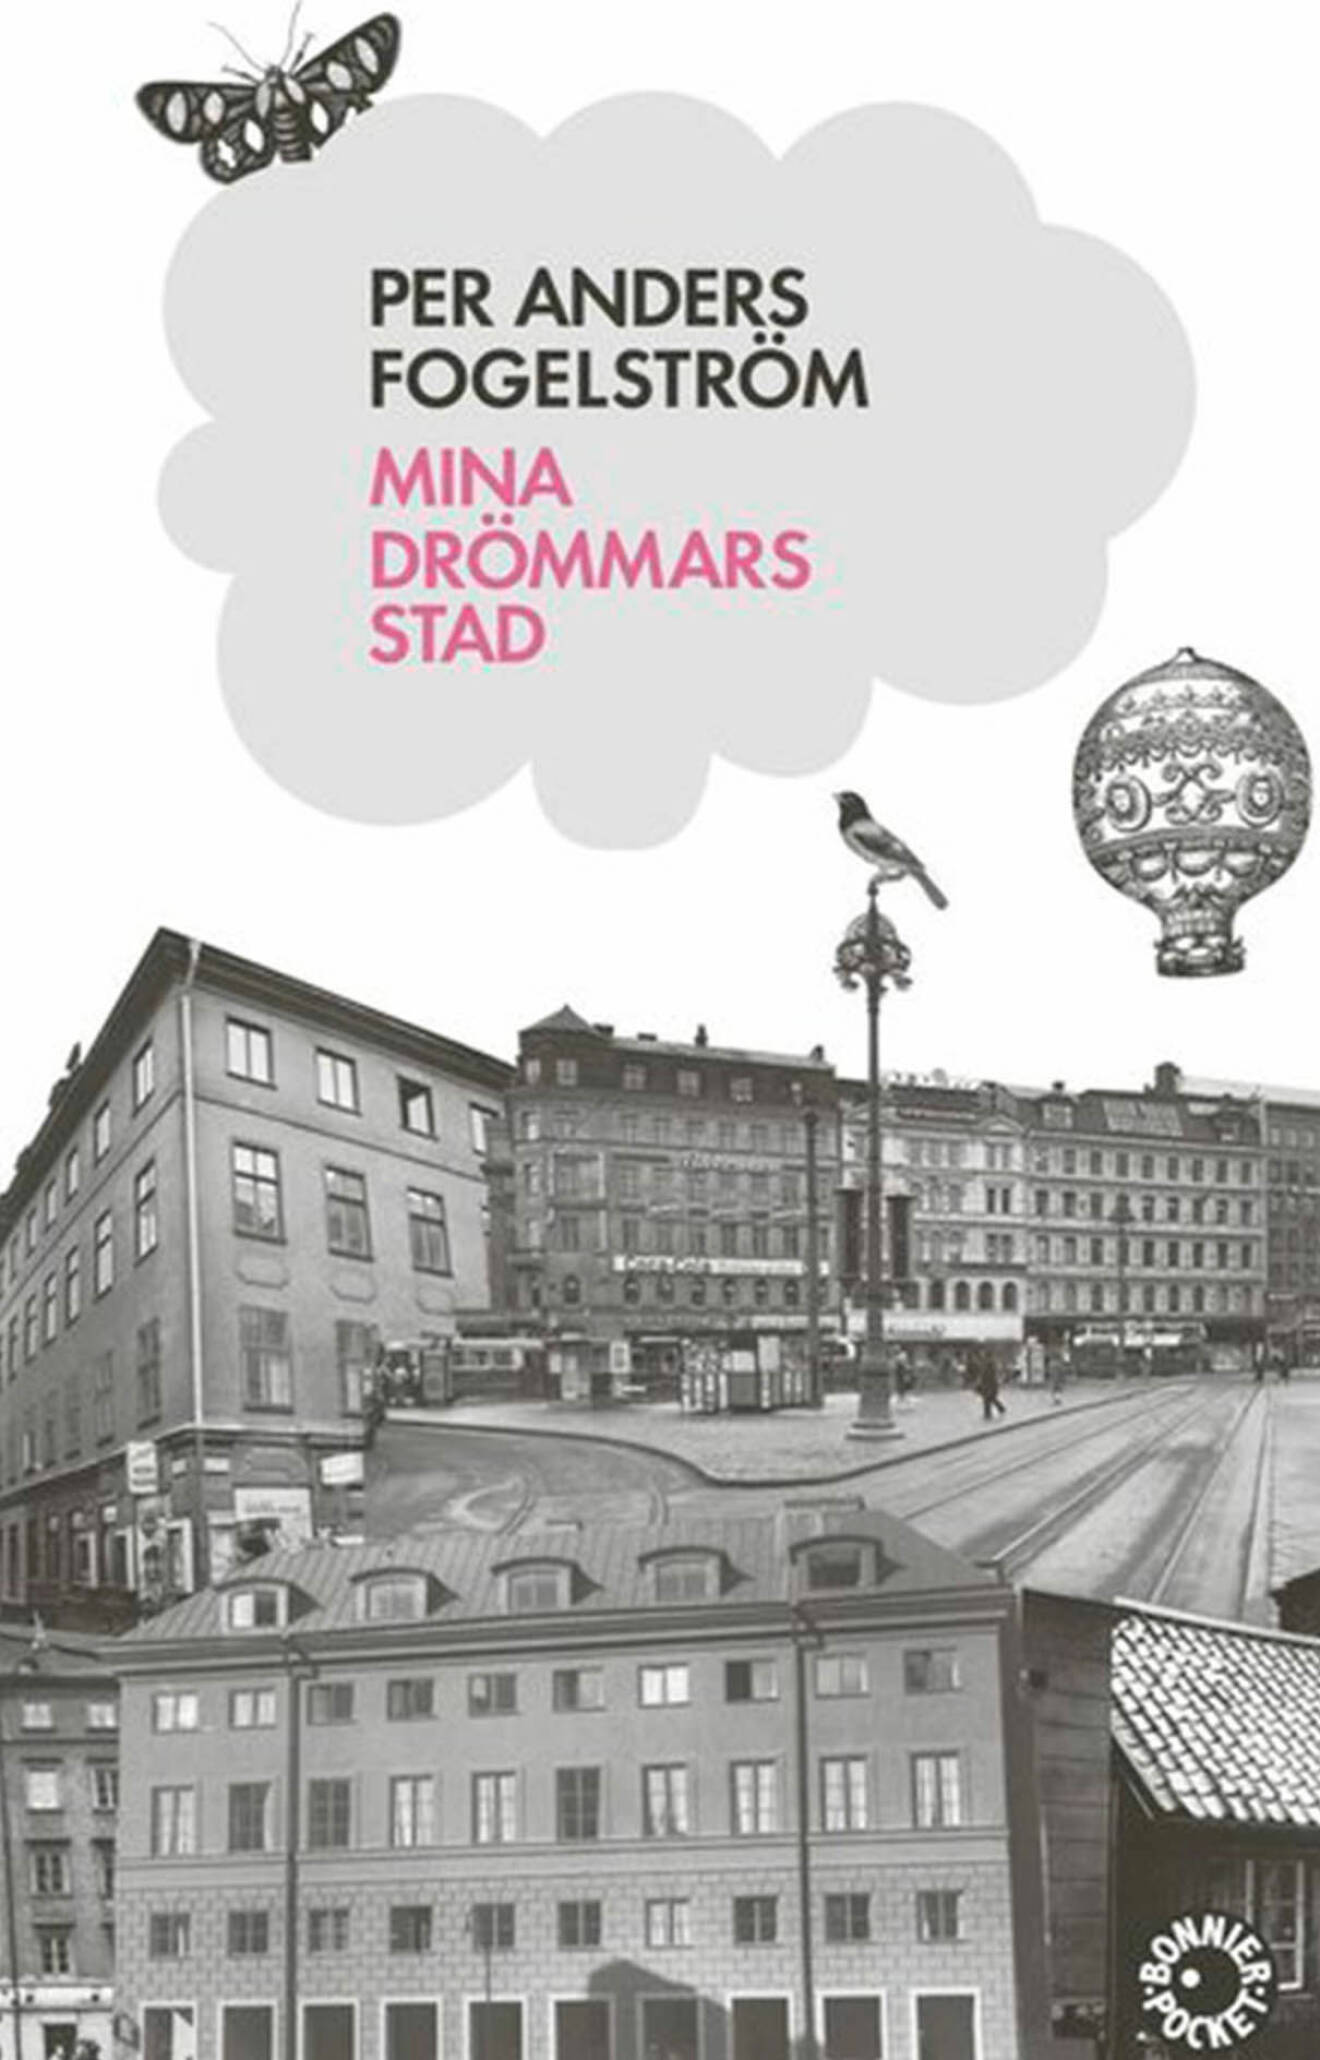 Bokomslag till Mina drömmars stad- collage över Stockholm.